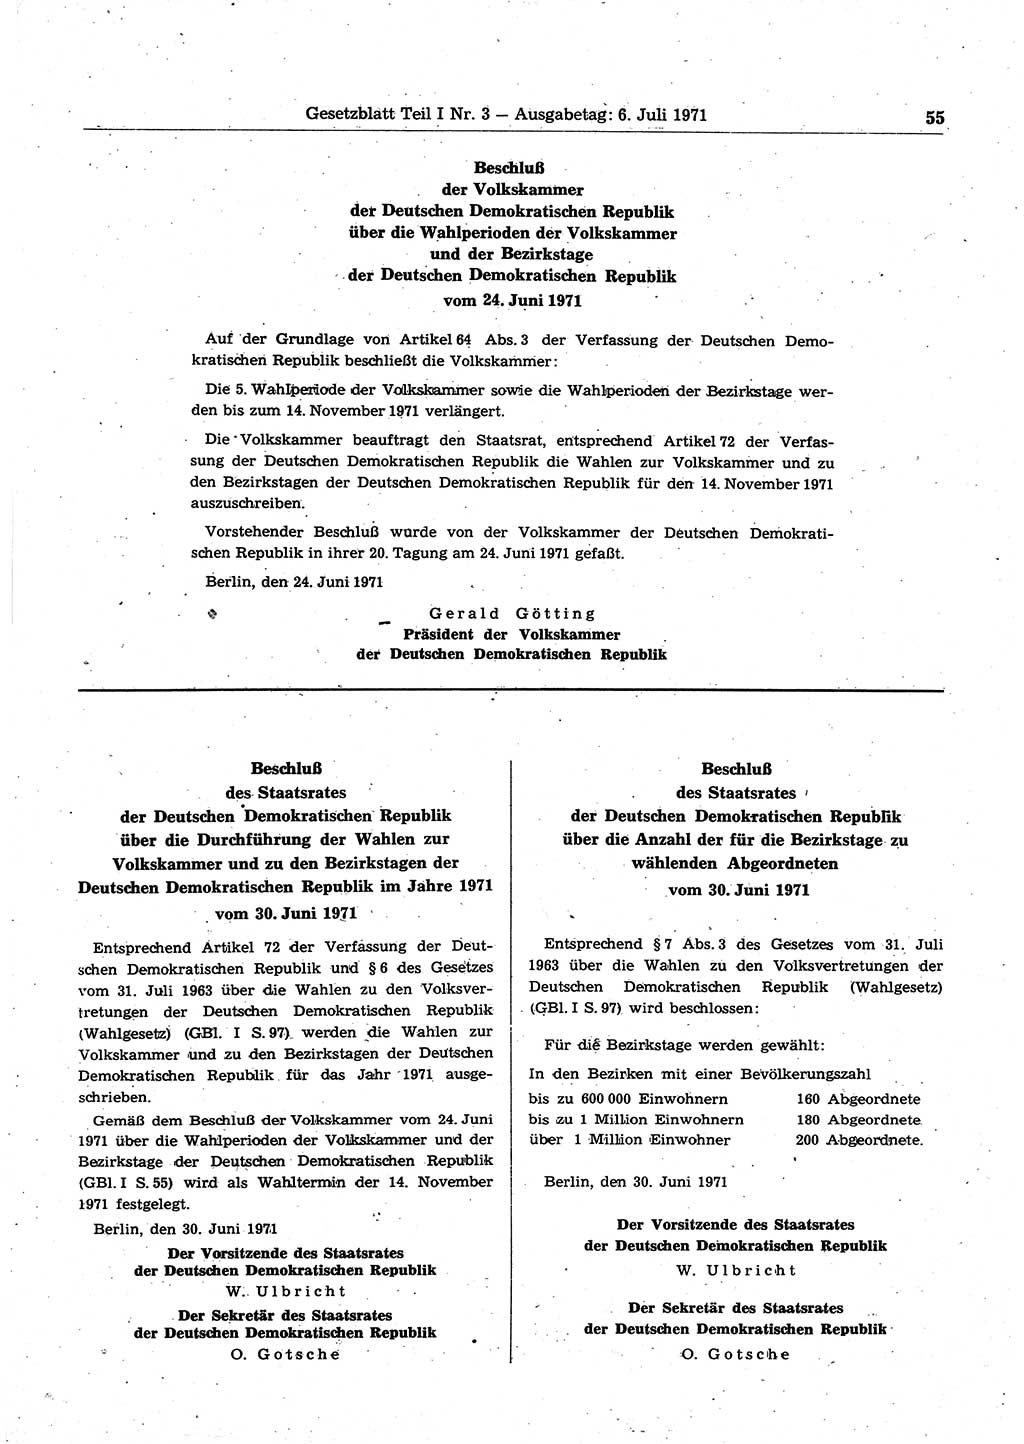 Gesetzblatt (GBl.) der Deutschen Demokratischen Republik (DDR) Teil Ⅰ 1971, Seite 55 (GBl. DDR Ⅰ 1971, S. 55)